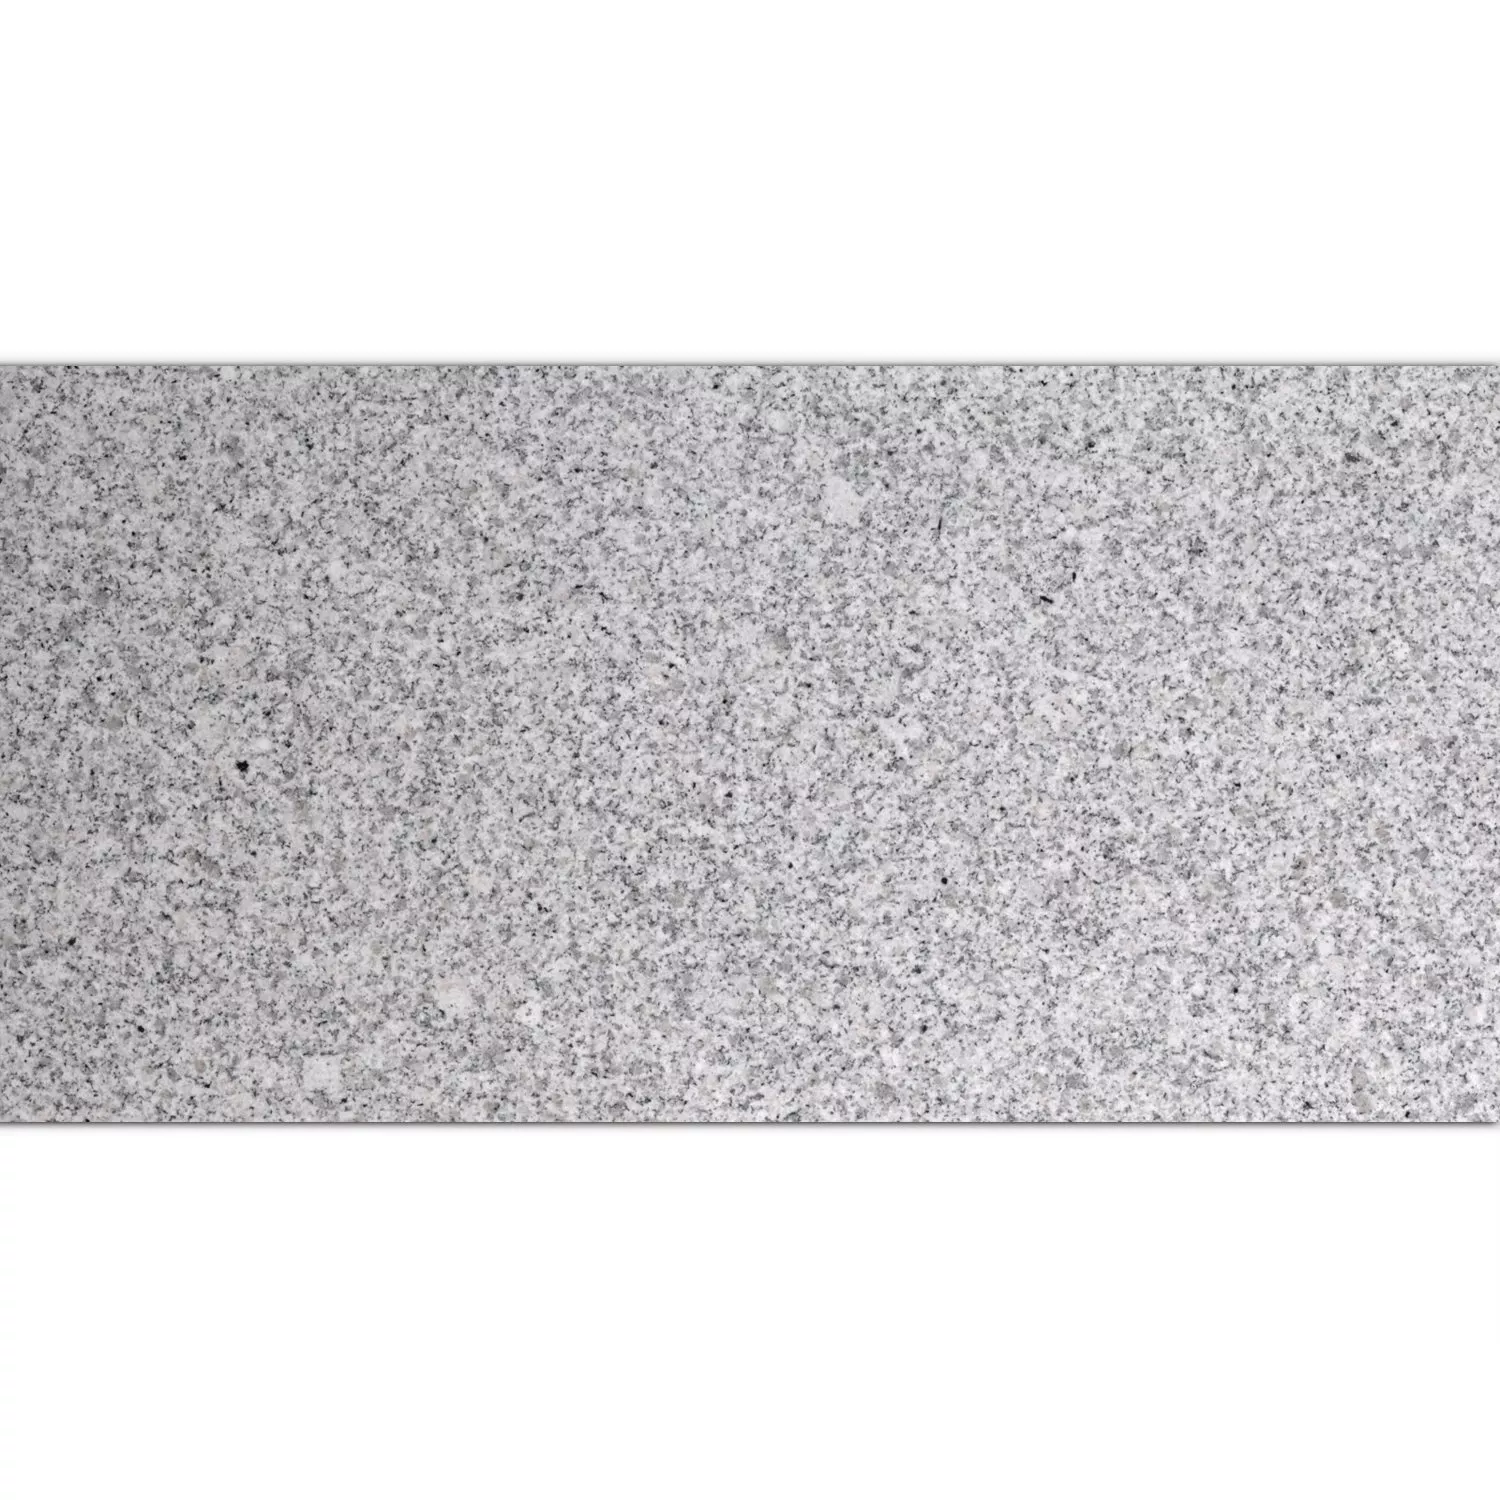 Natursteinfliesen Granit China Grey Poliert 30,5x61cm